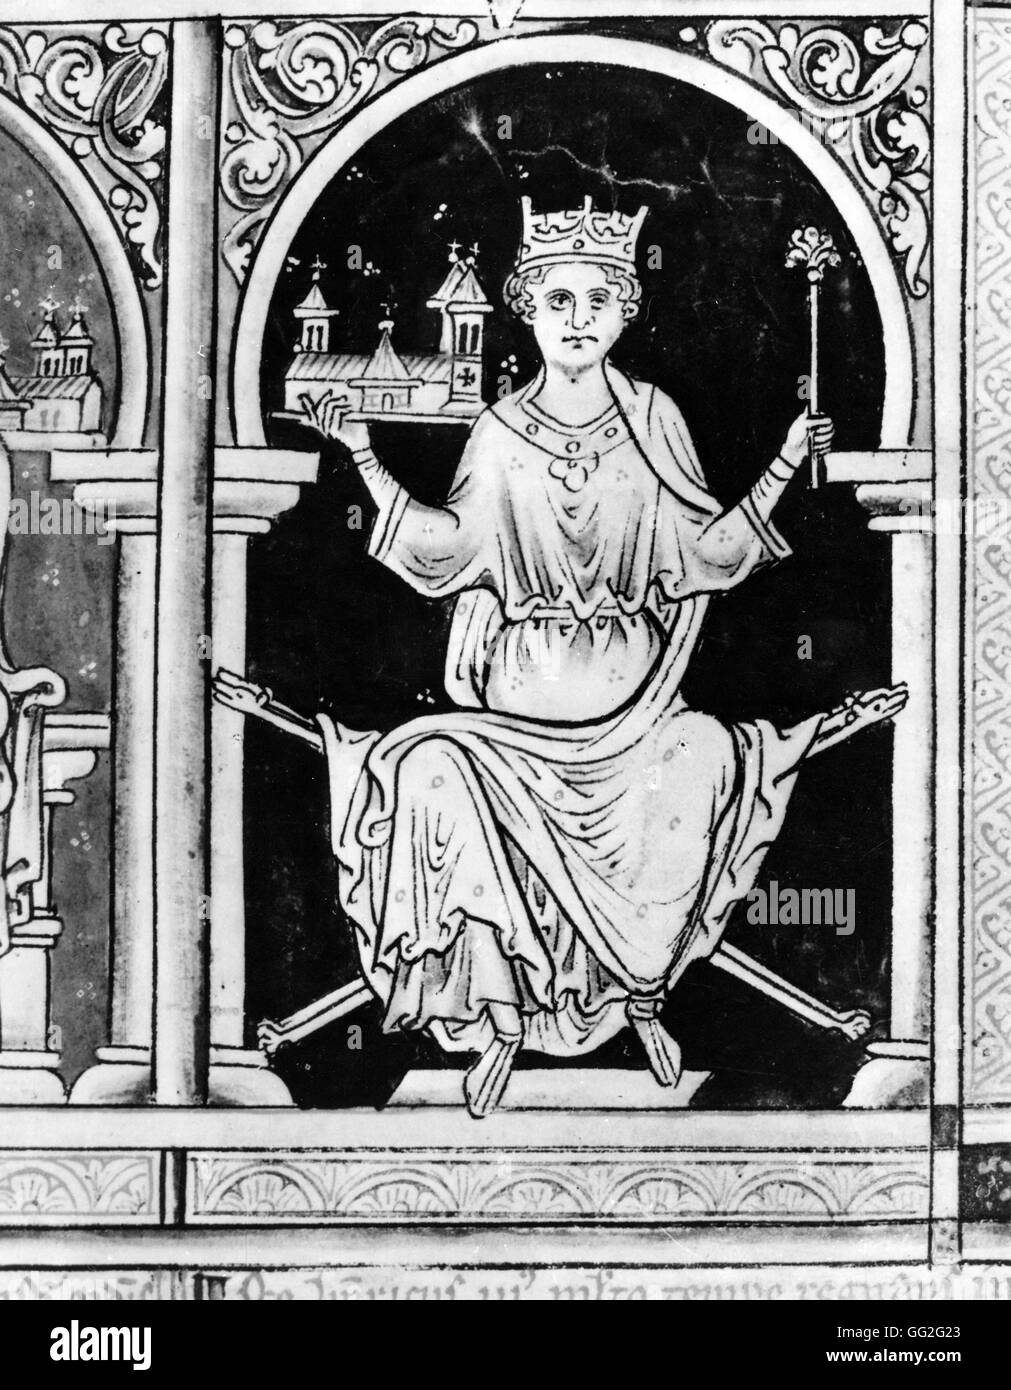 Mateo Paris escuela de inglés Enrique III, Rey de Inglaterra, sosteniendo un modelo de Westminster Abbey en su mano derecha, del siglo XIII, el British Museum de Londres Foto de stock